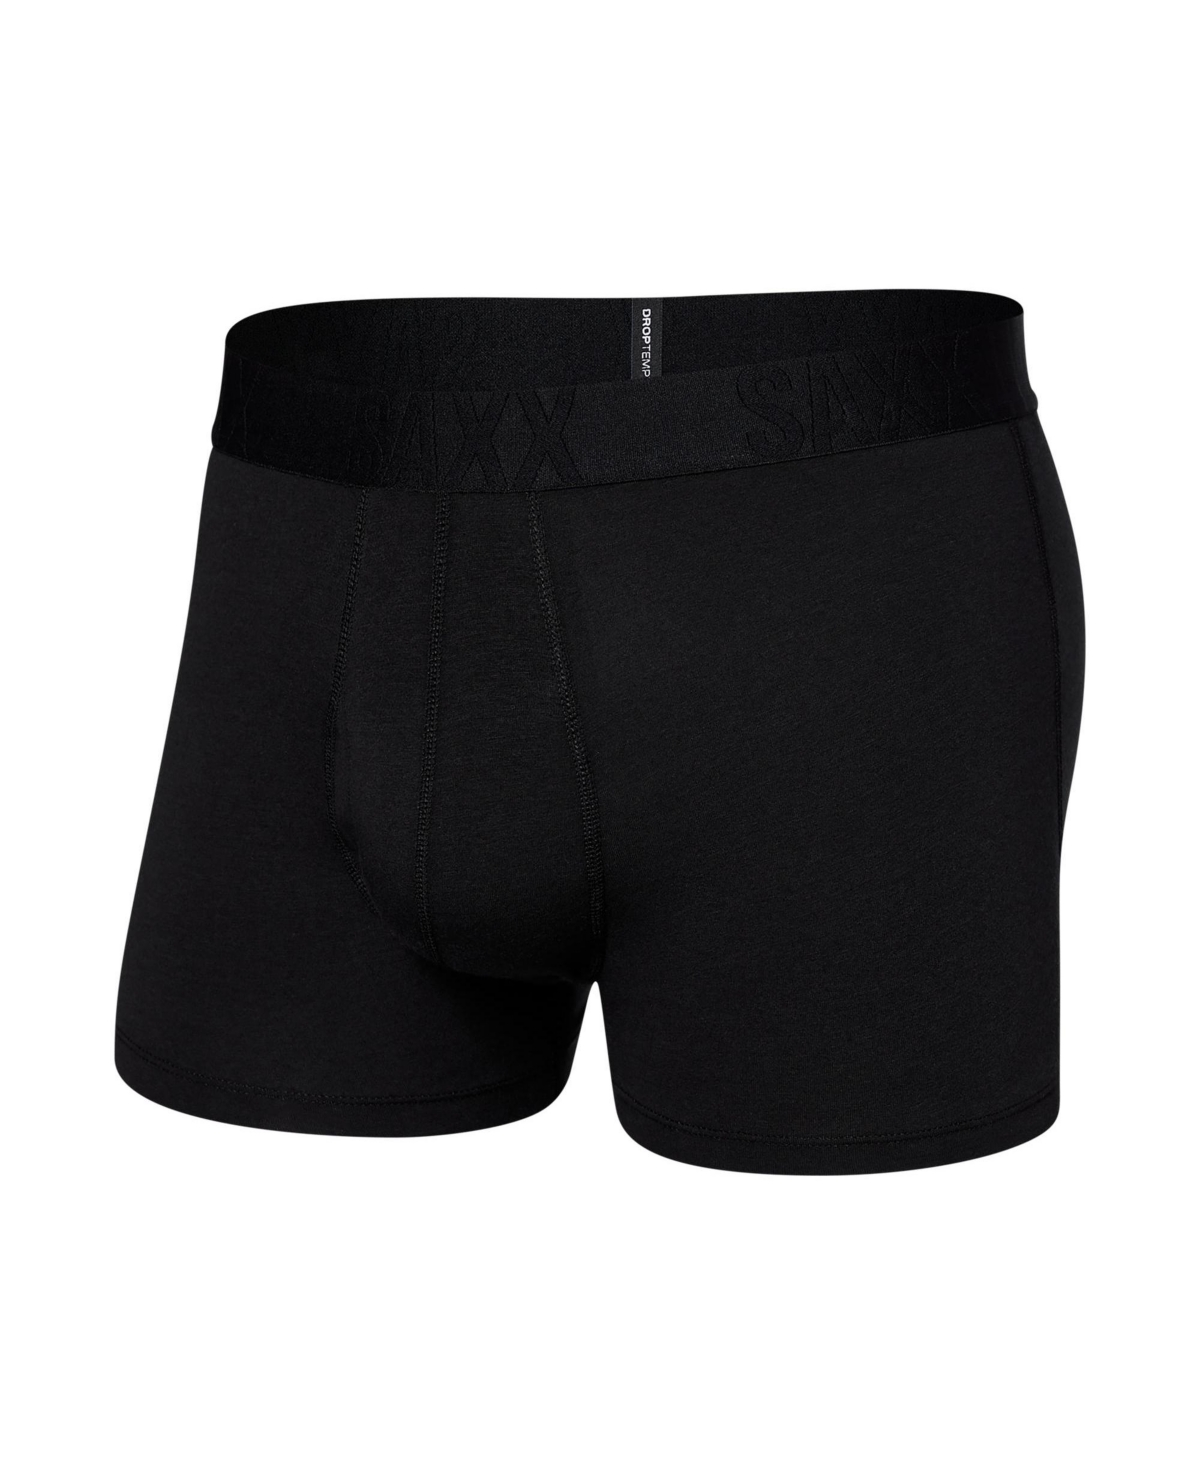 Shop Saxx Men's Droptemp Cooling Cotton Slim Fit Trunk In Black